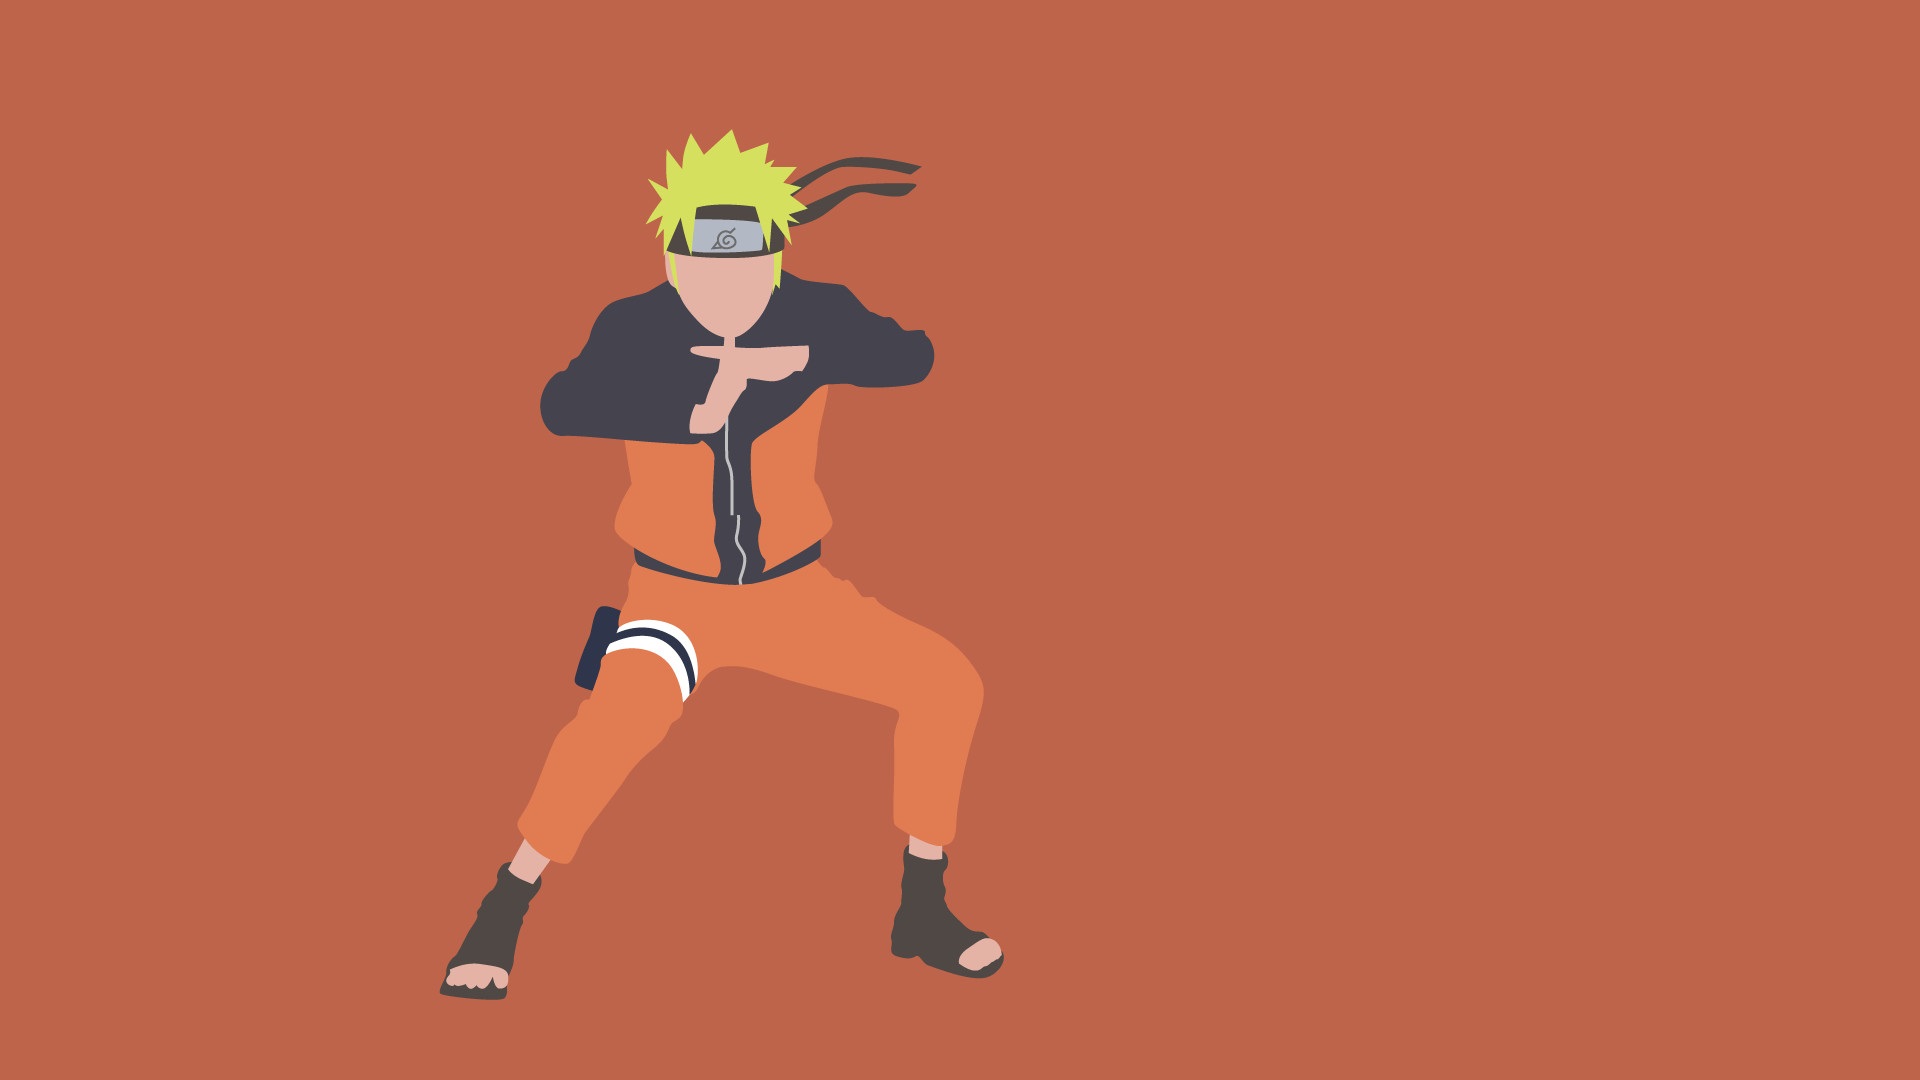 Sfondi per Naruto PC – 100 immagini per il download gratuito